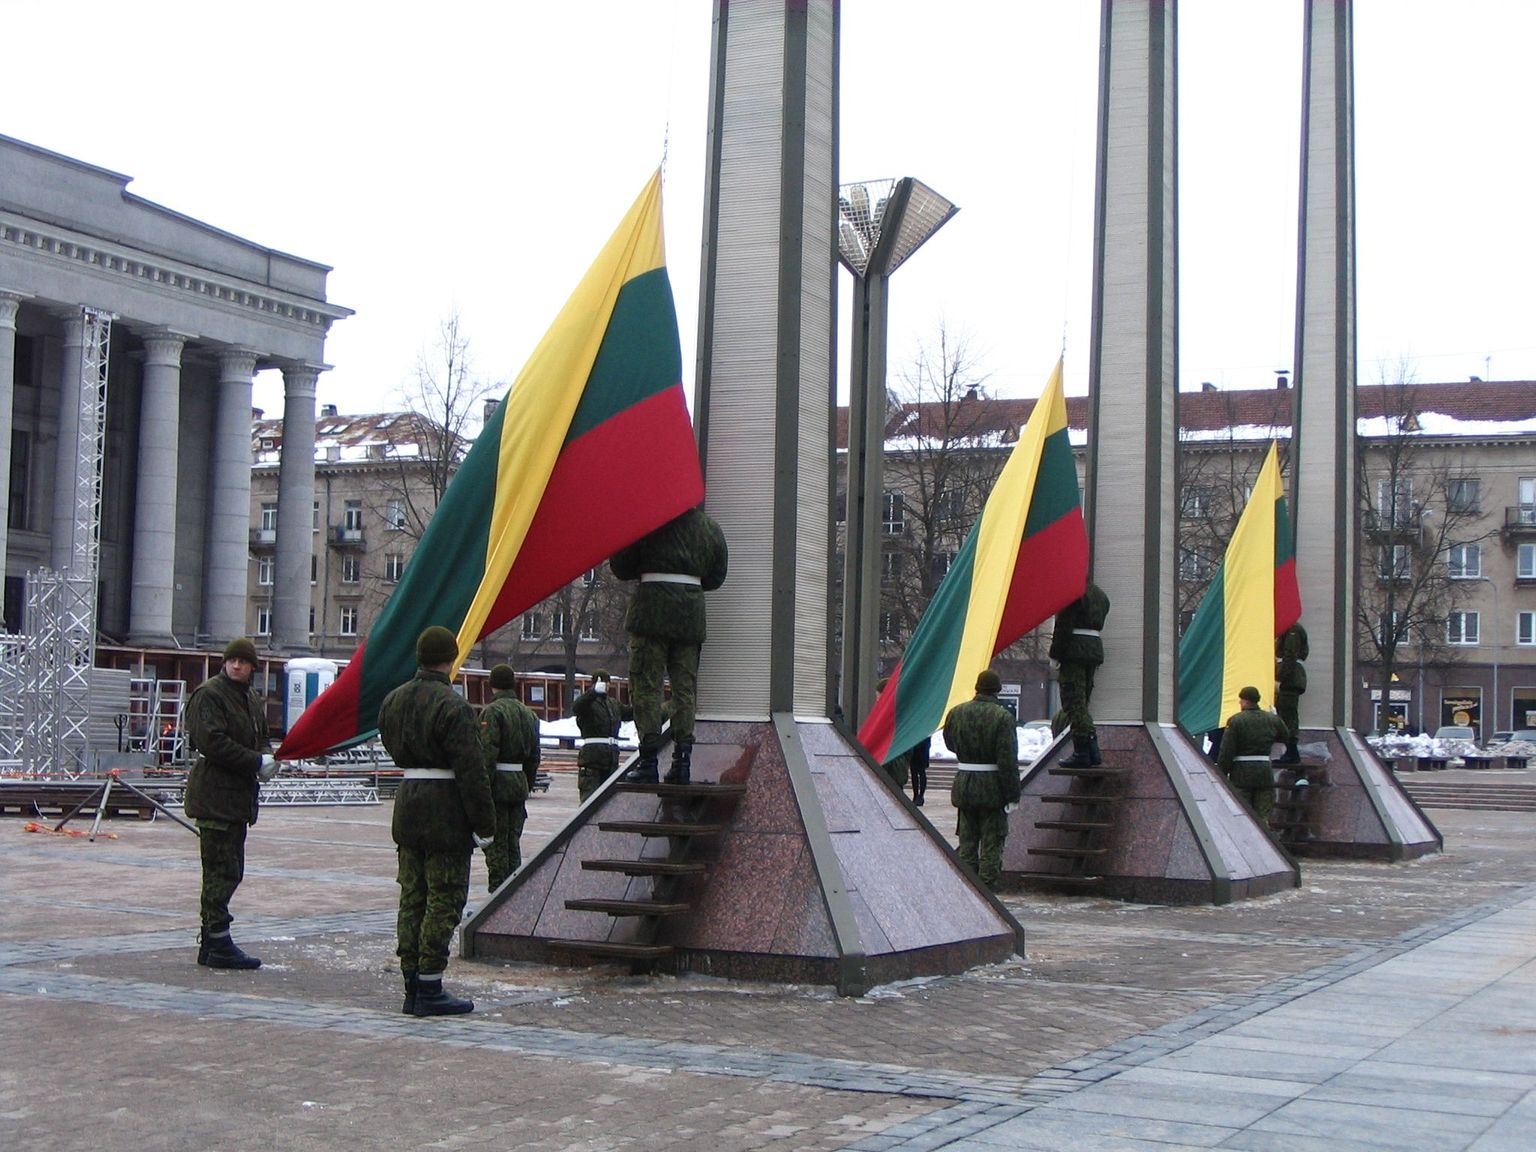 Leedu sõjaväelaste üleeilne proov tänaseks pidulikuks lipuheiskamiseks.